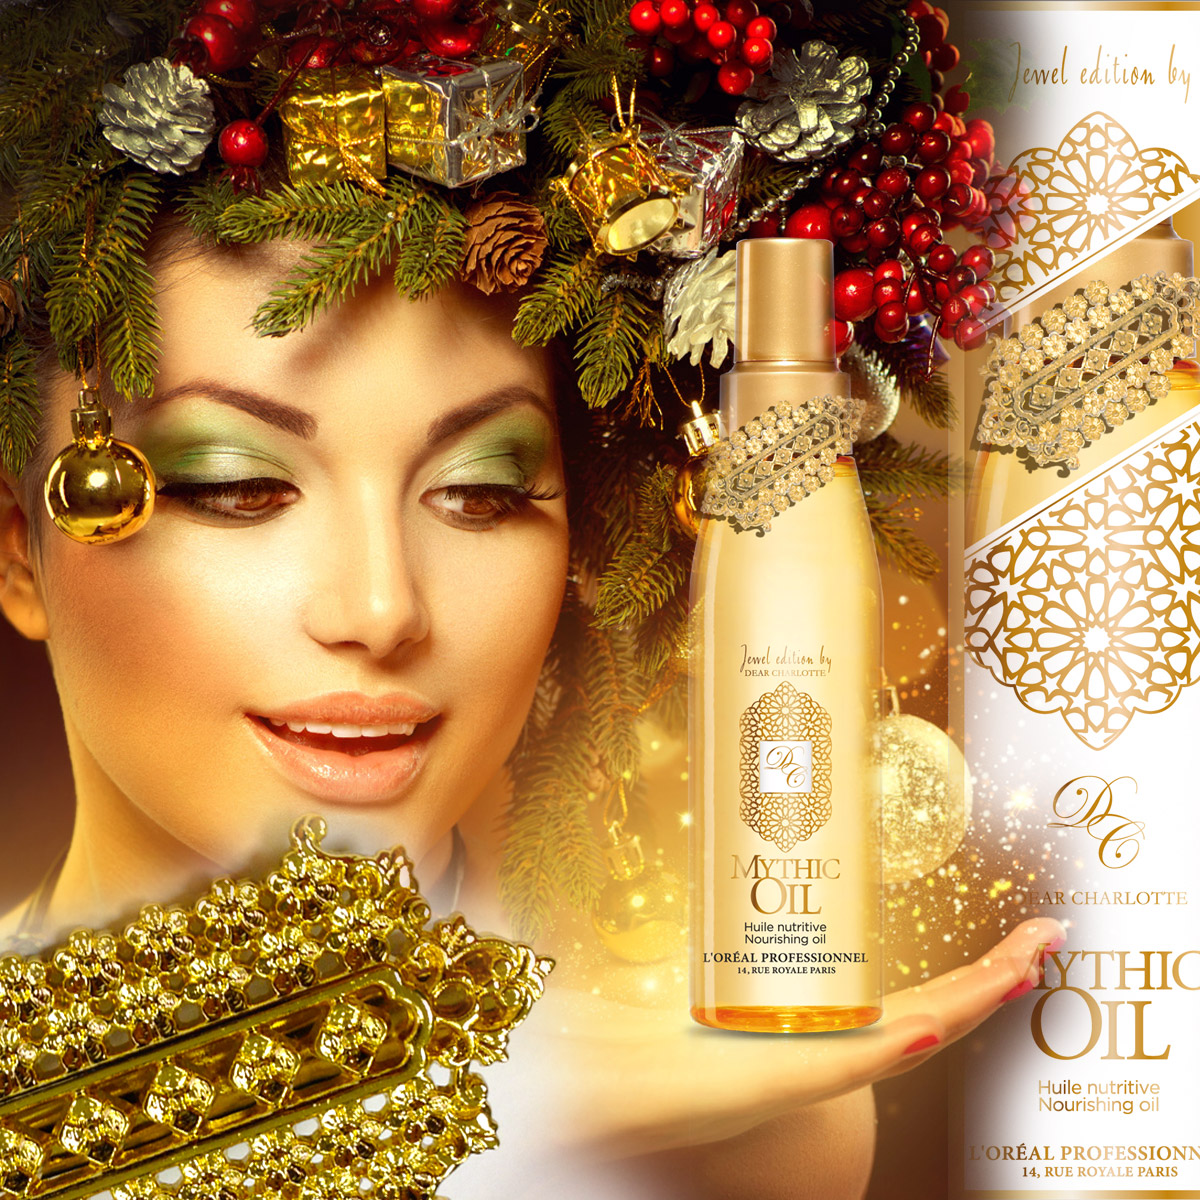 Limitovaná vánoční edice Mythic Oil obsahuje také luxusní šperk.